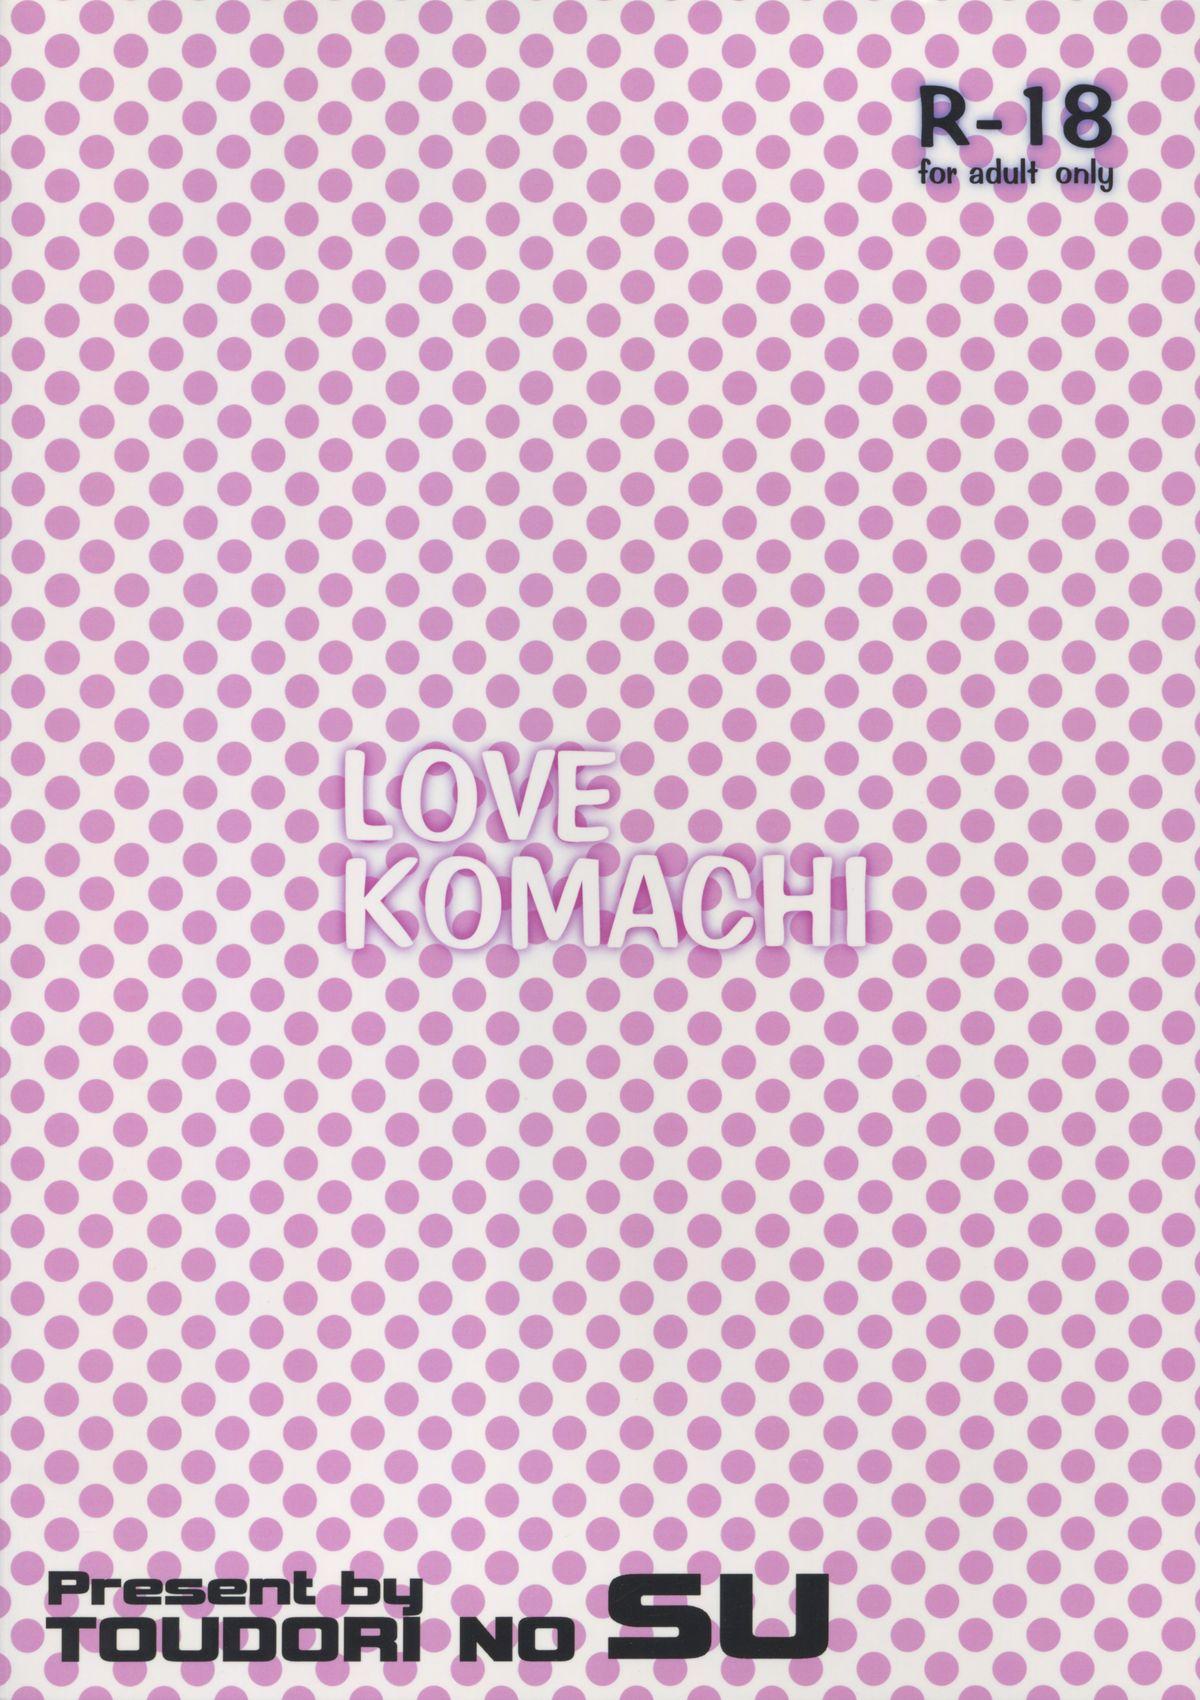 Amateur Sex LOVE KOMACHI - Touhou project Passionate - Page 2